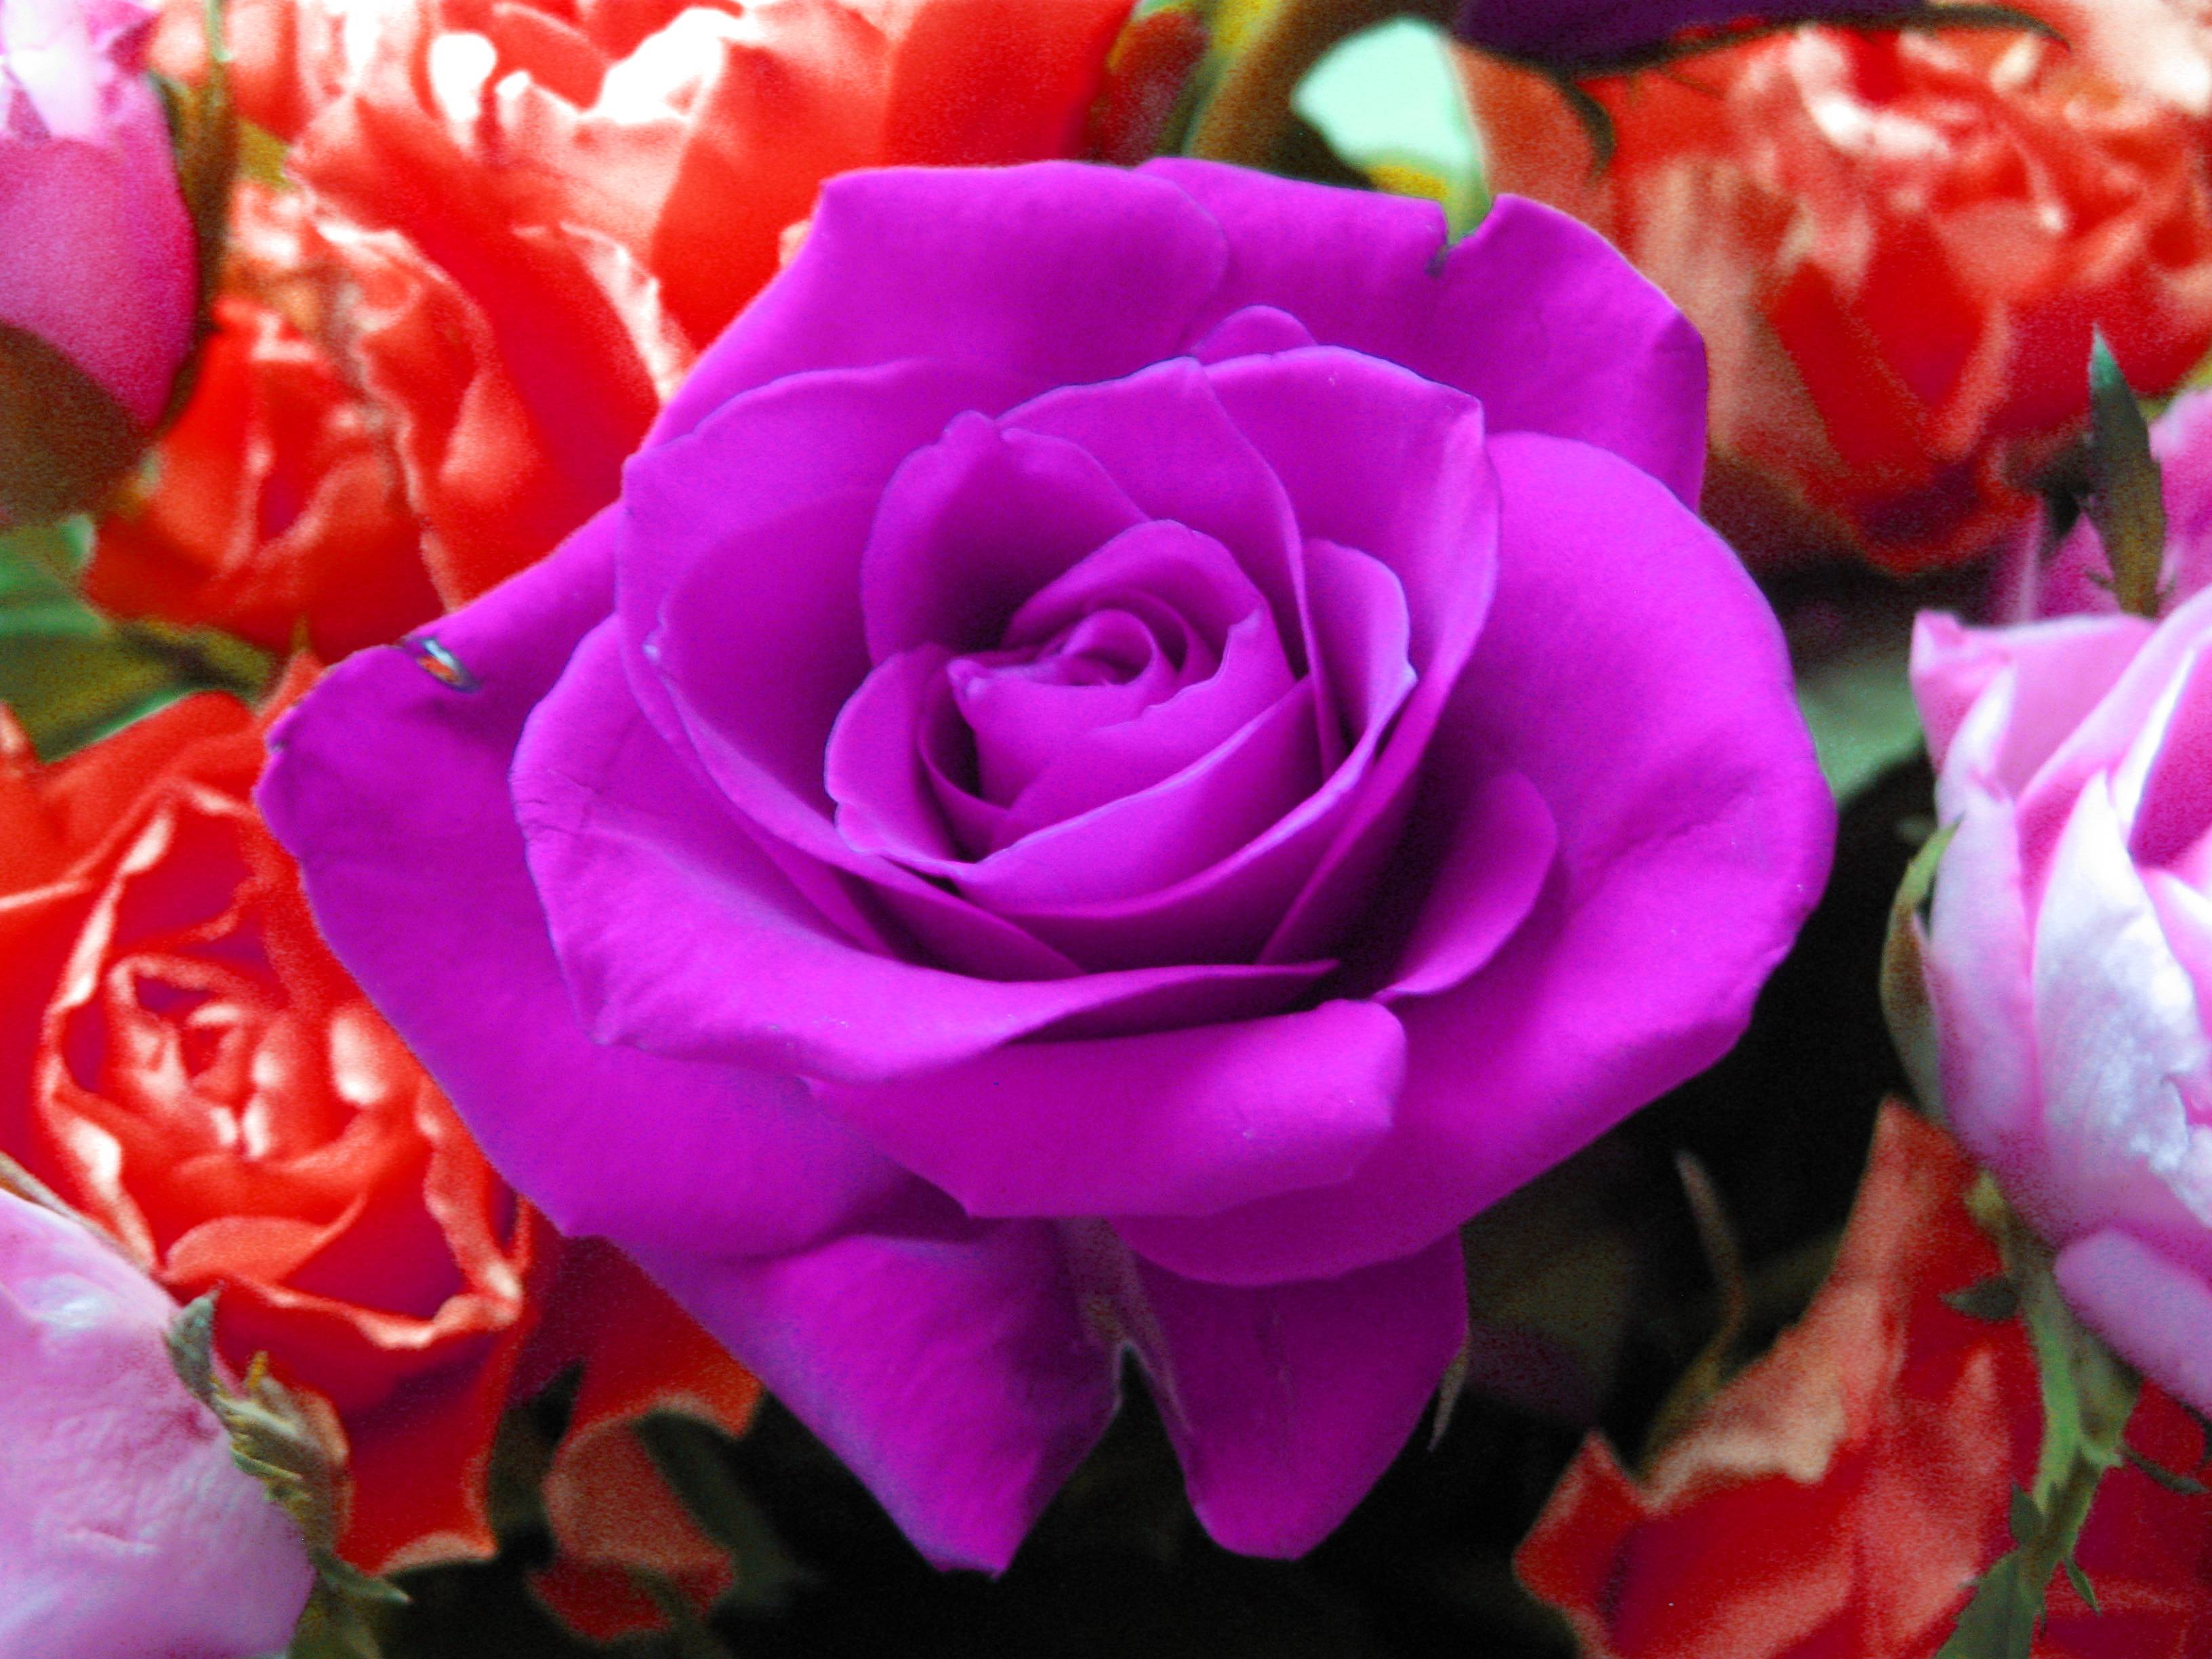 Violet Rose Wallpaper